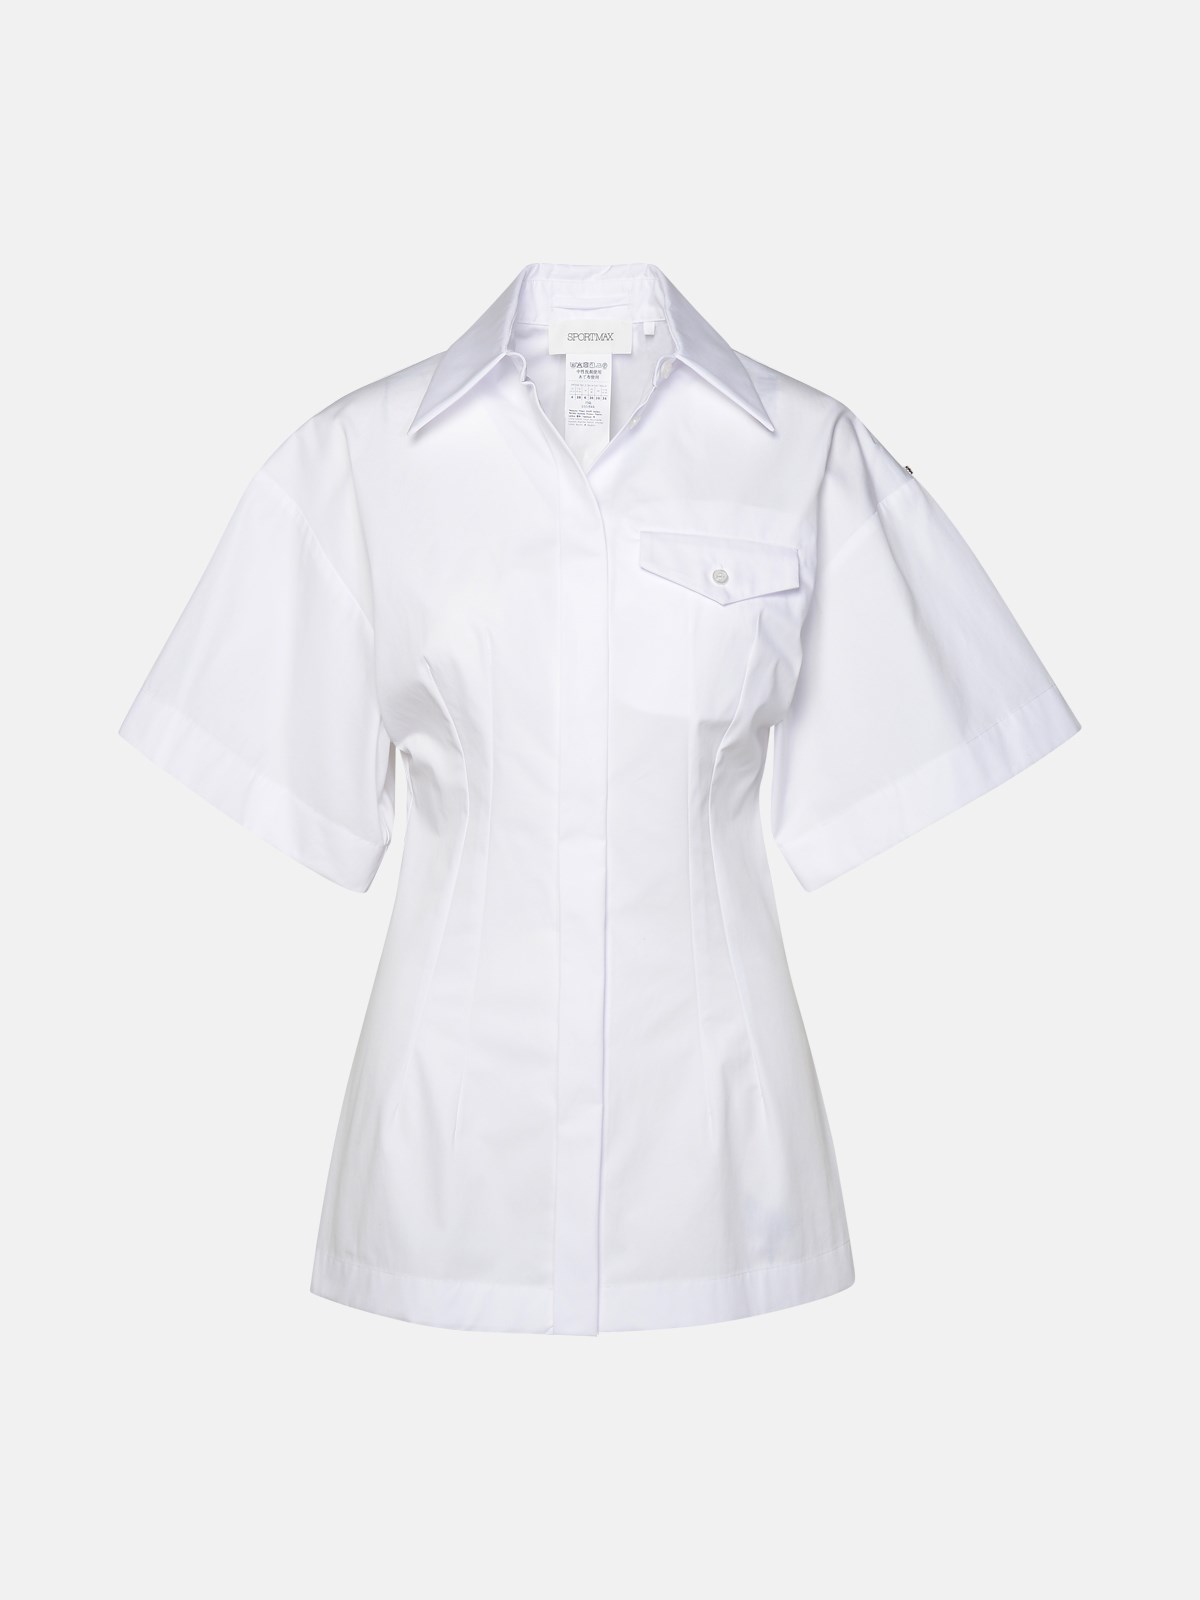 Sportmax White Cotton Shirt